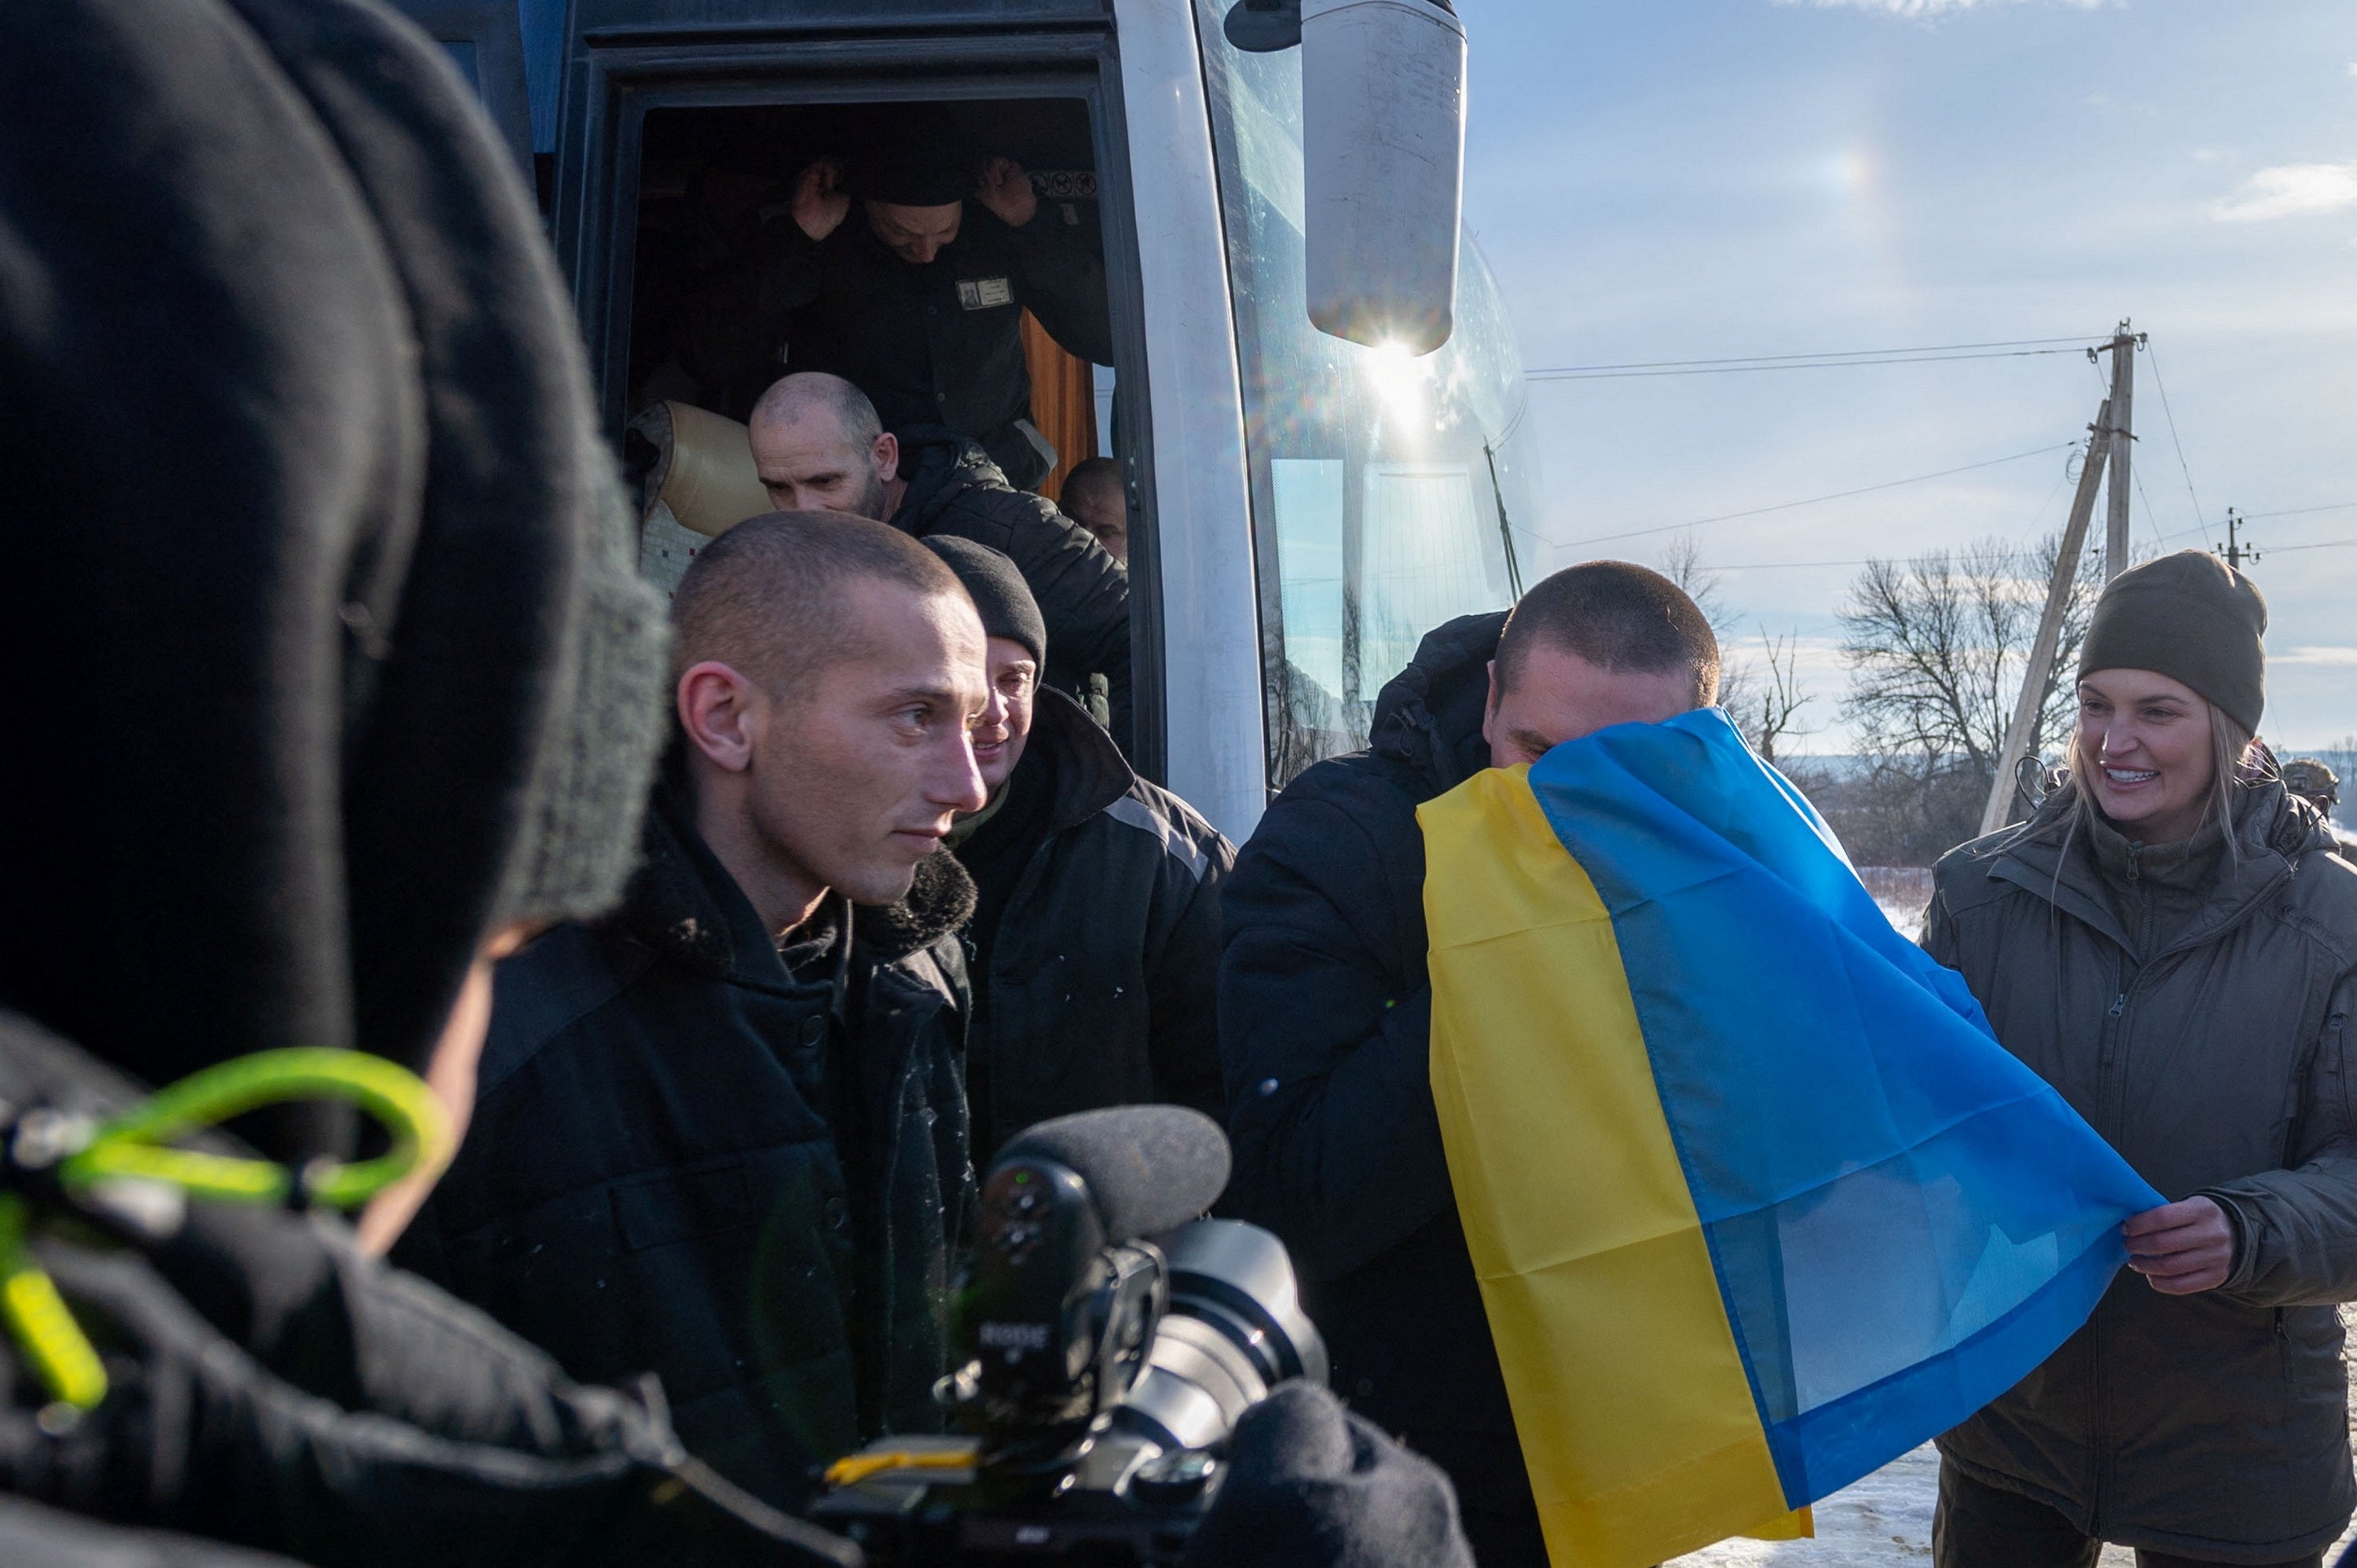 Dozens of Ukrainian PoWs, wearing black Russian prisoner uniforms, leave a bus as part of the swap